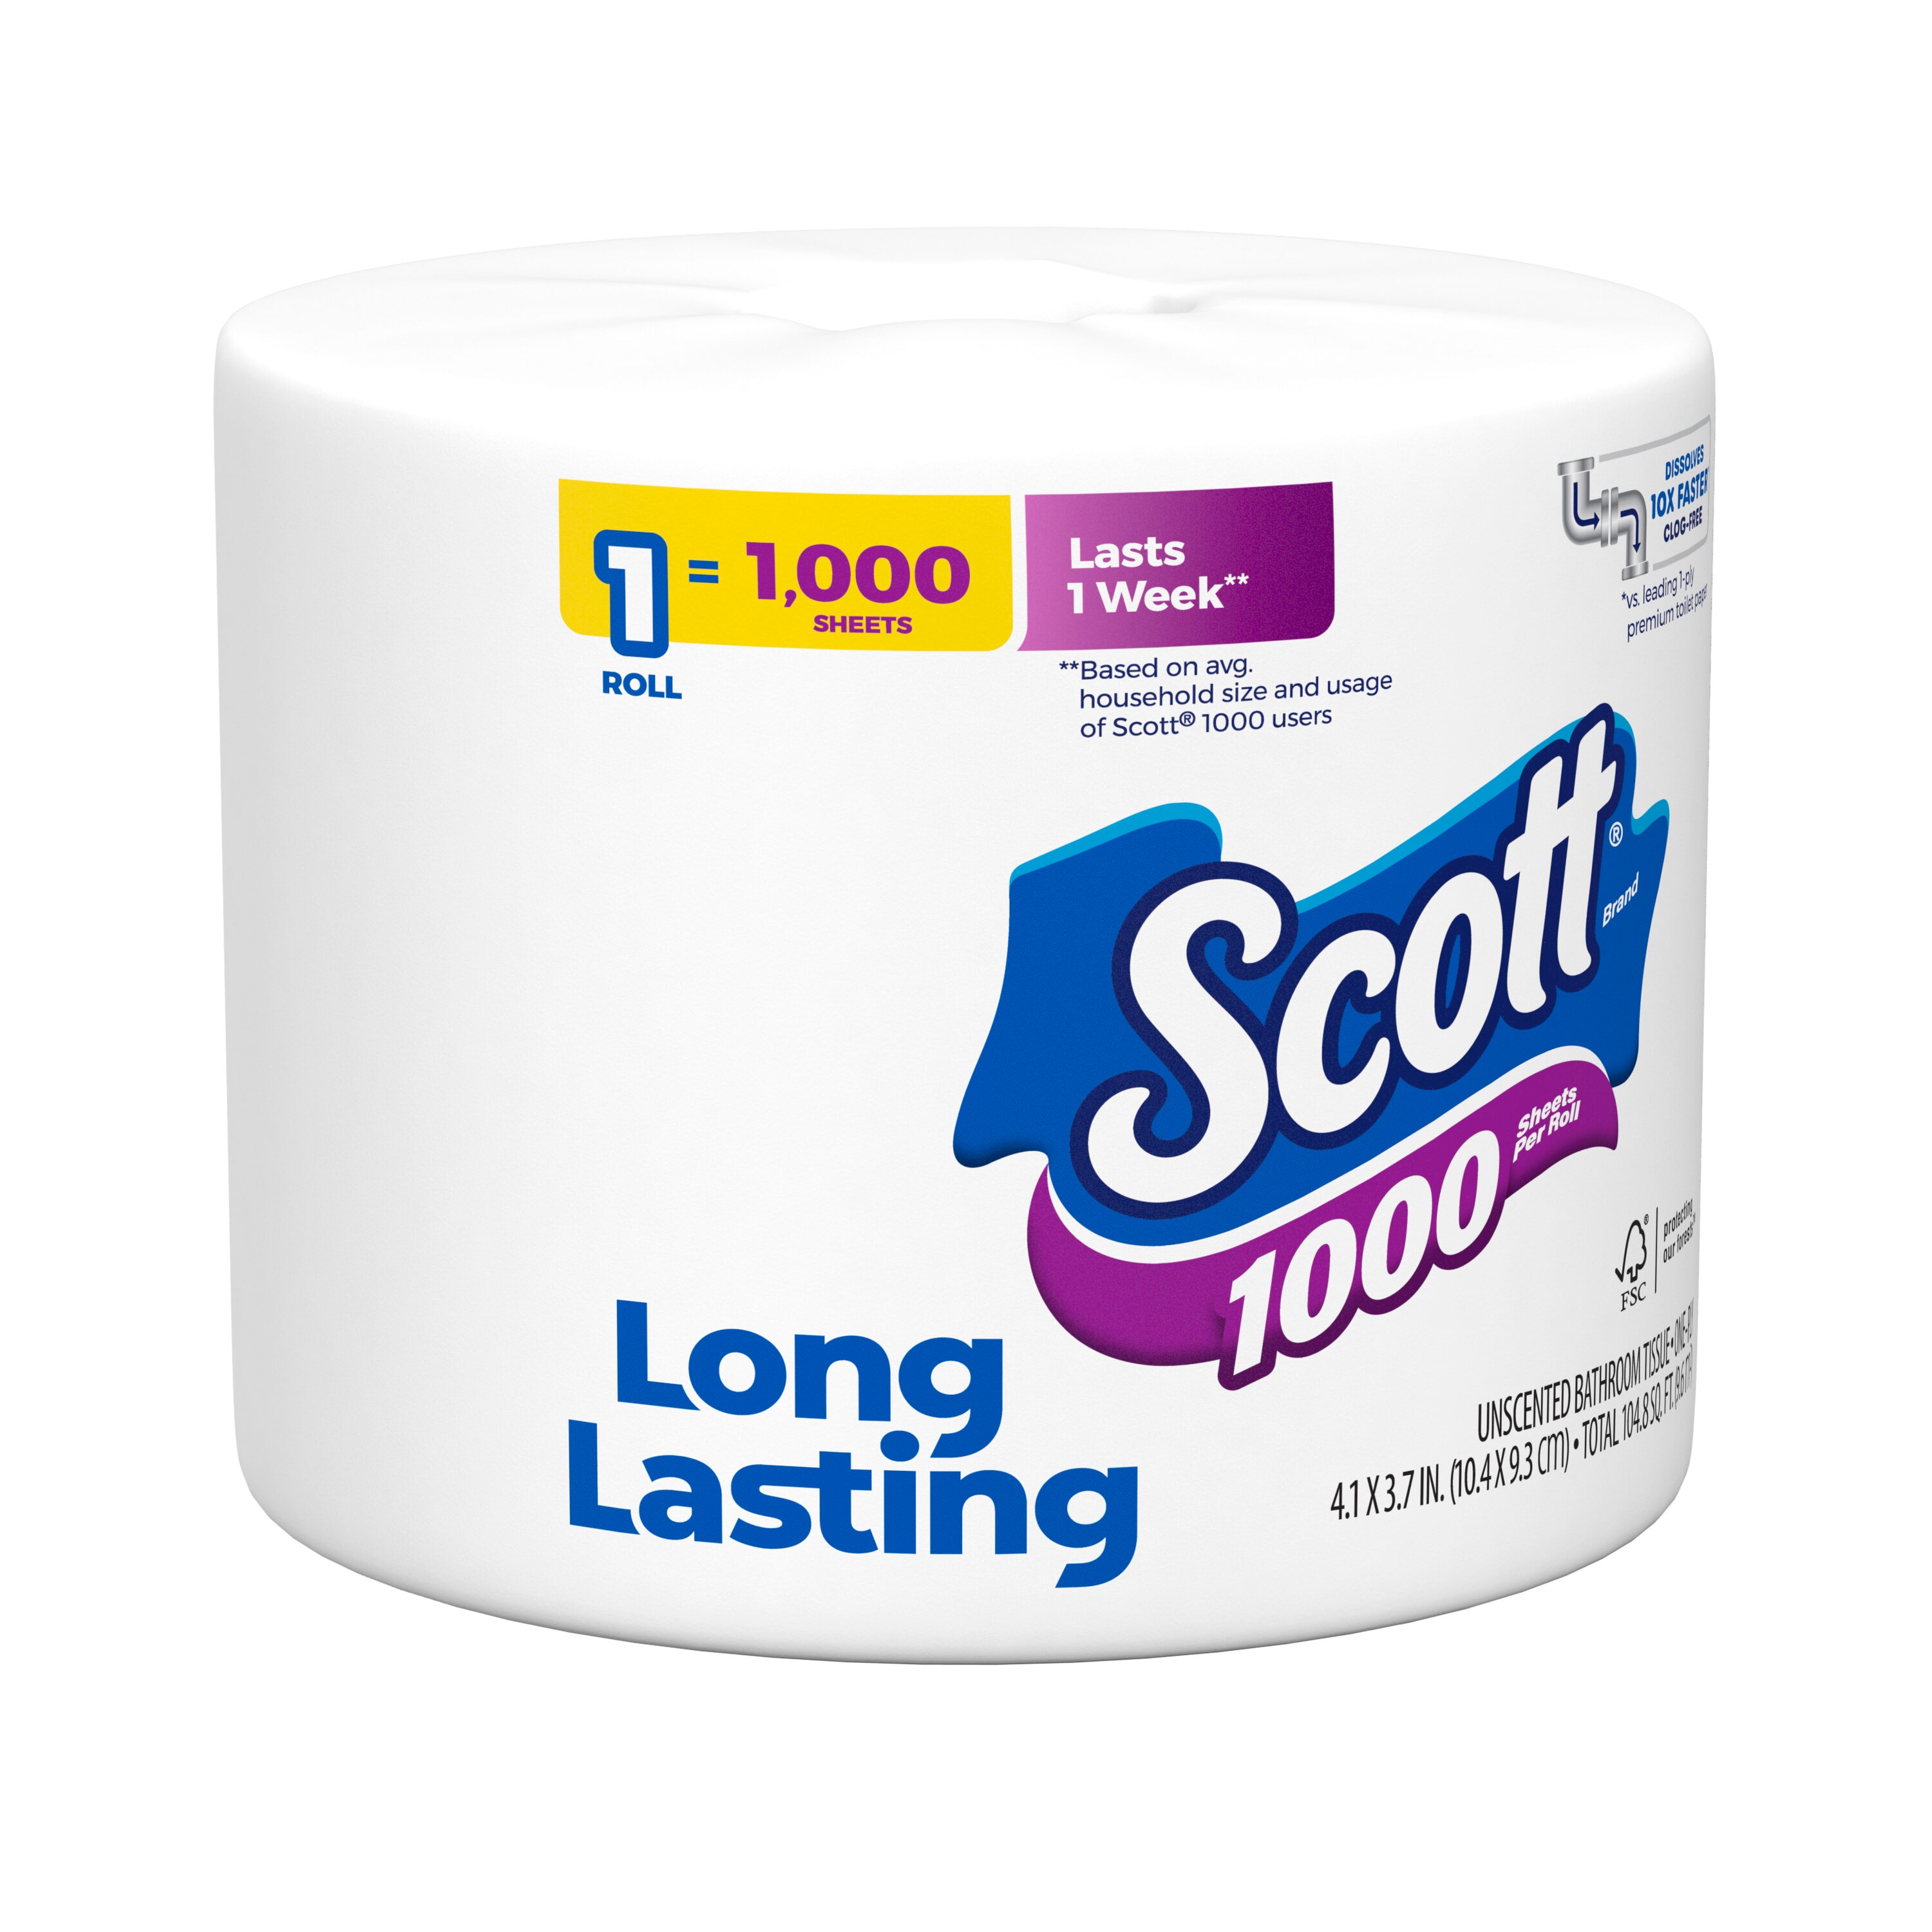  Scott 1000 Toilet Paper, 32 Rolls, Septic-Safe, 1-Ply Toilet  Tissue : Health & Household